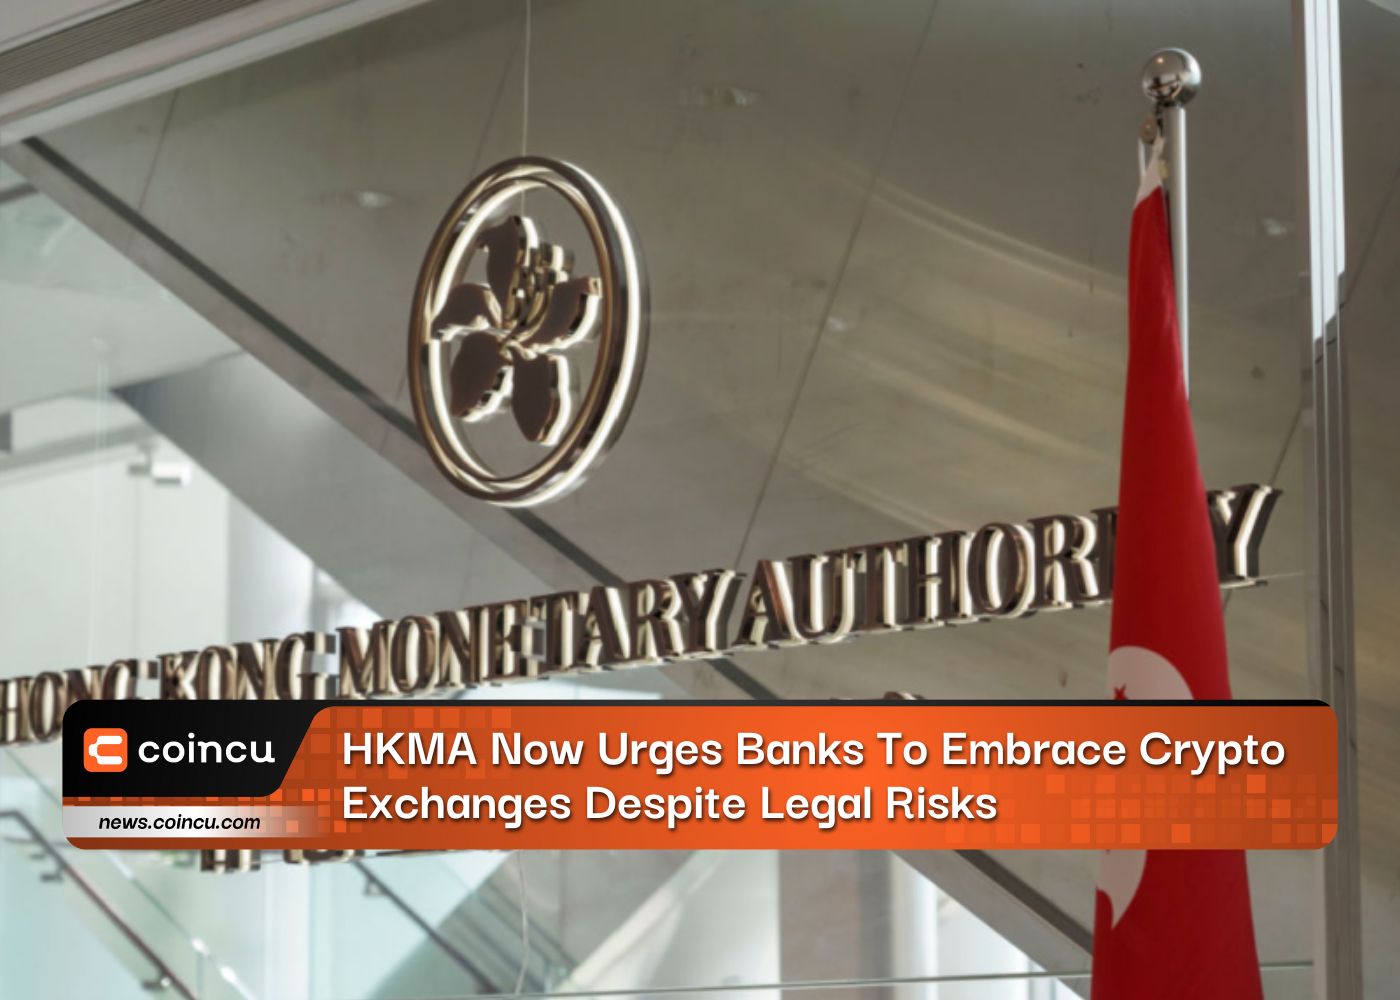 HKMA теперь призывает банки использовать криптовалютные биржи, несмотря на юридические риски